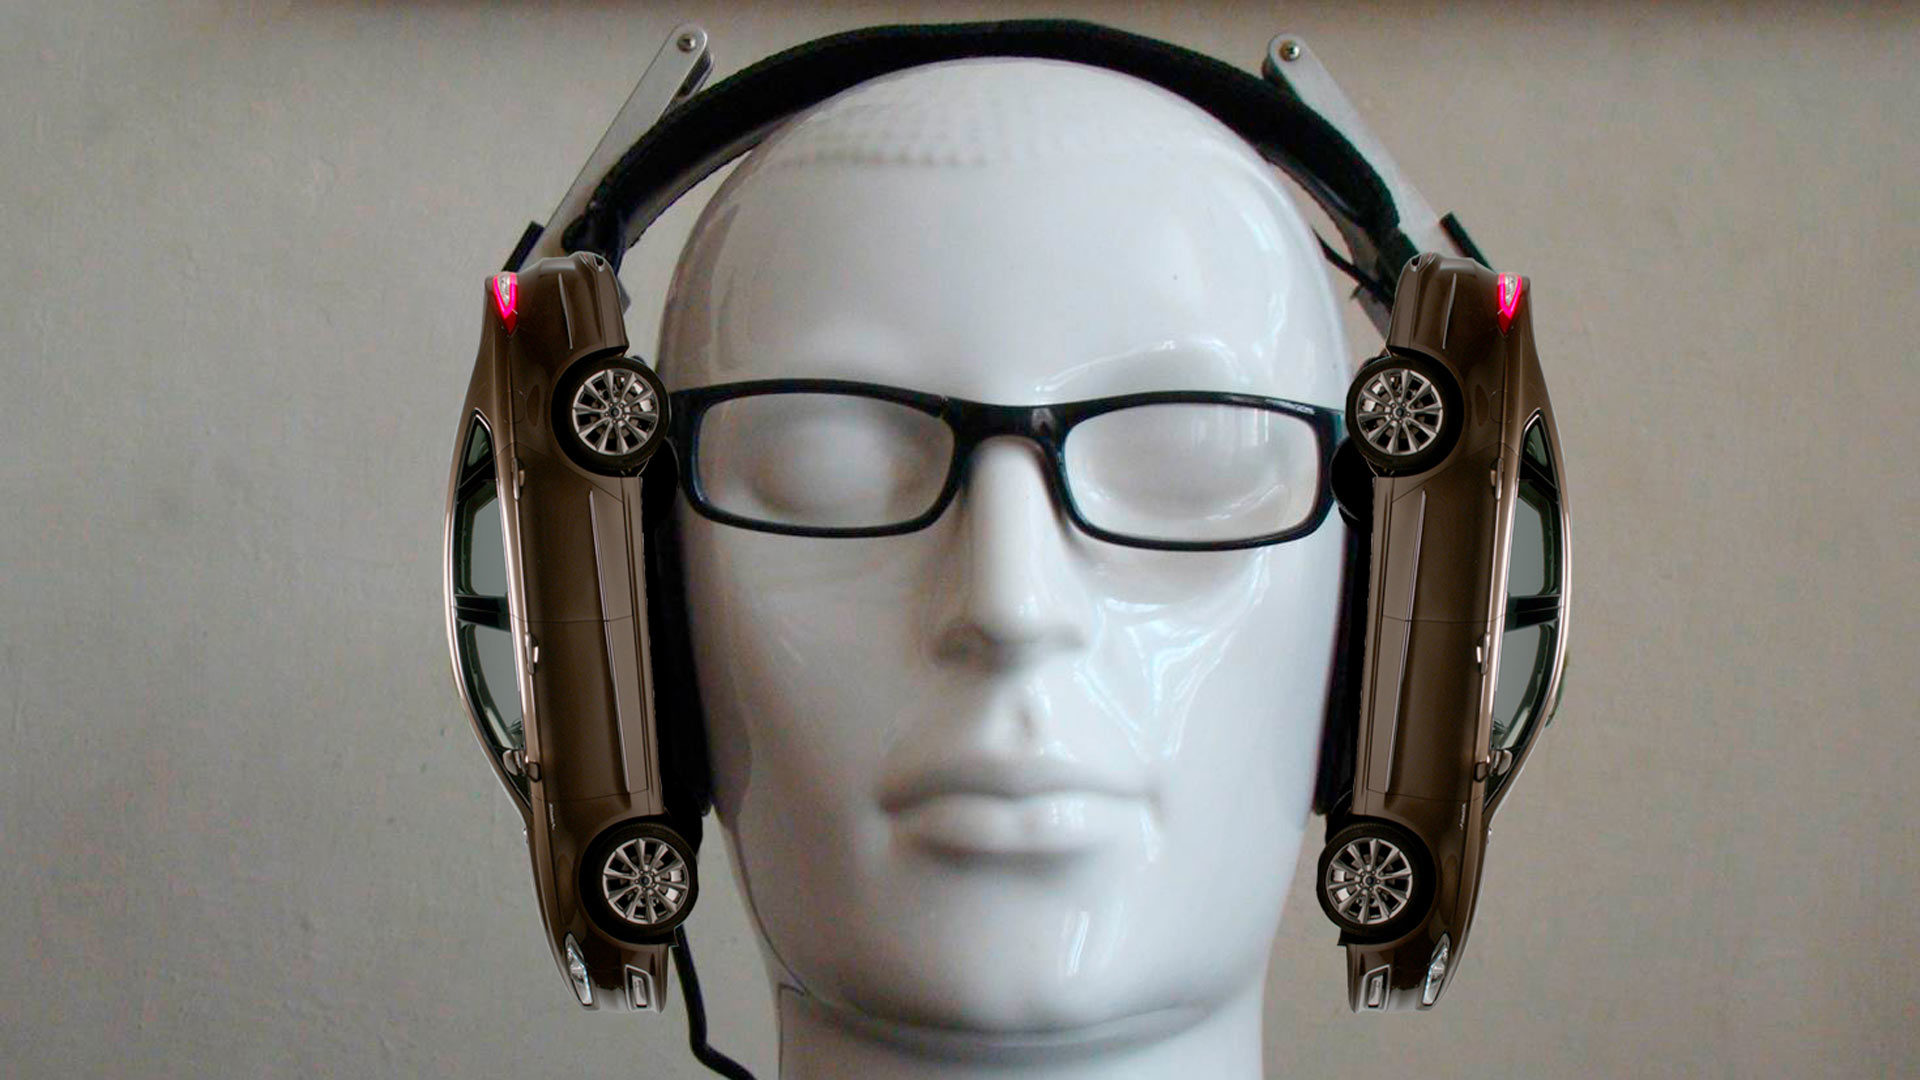 Driving in headphones